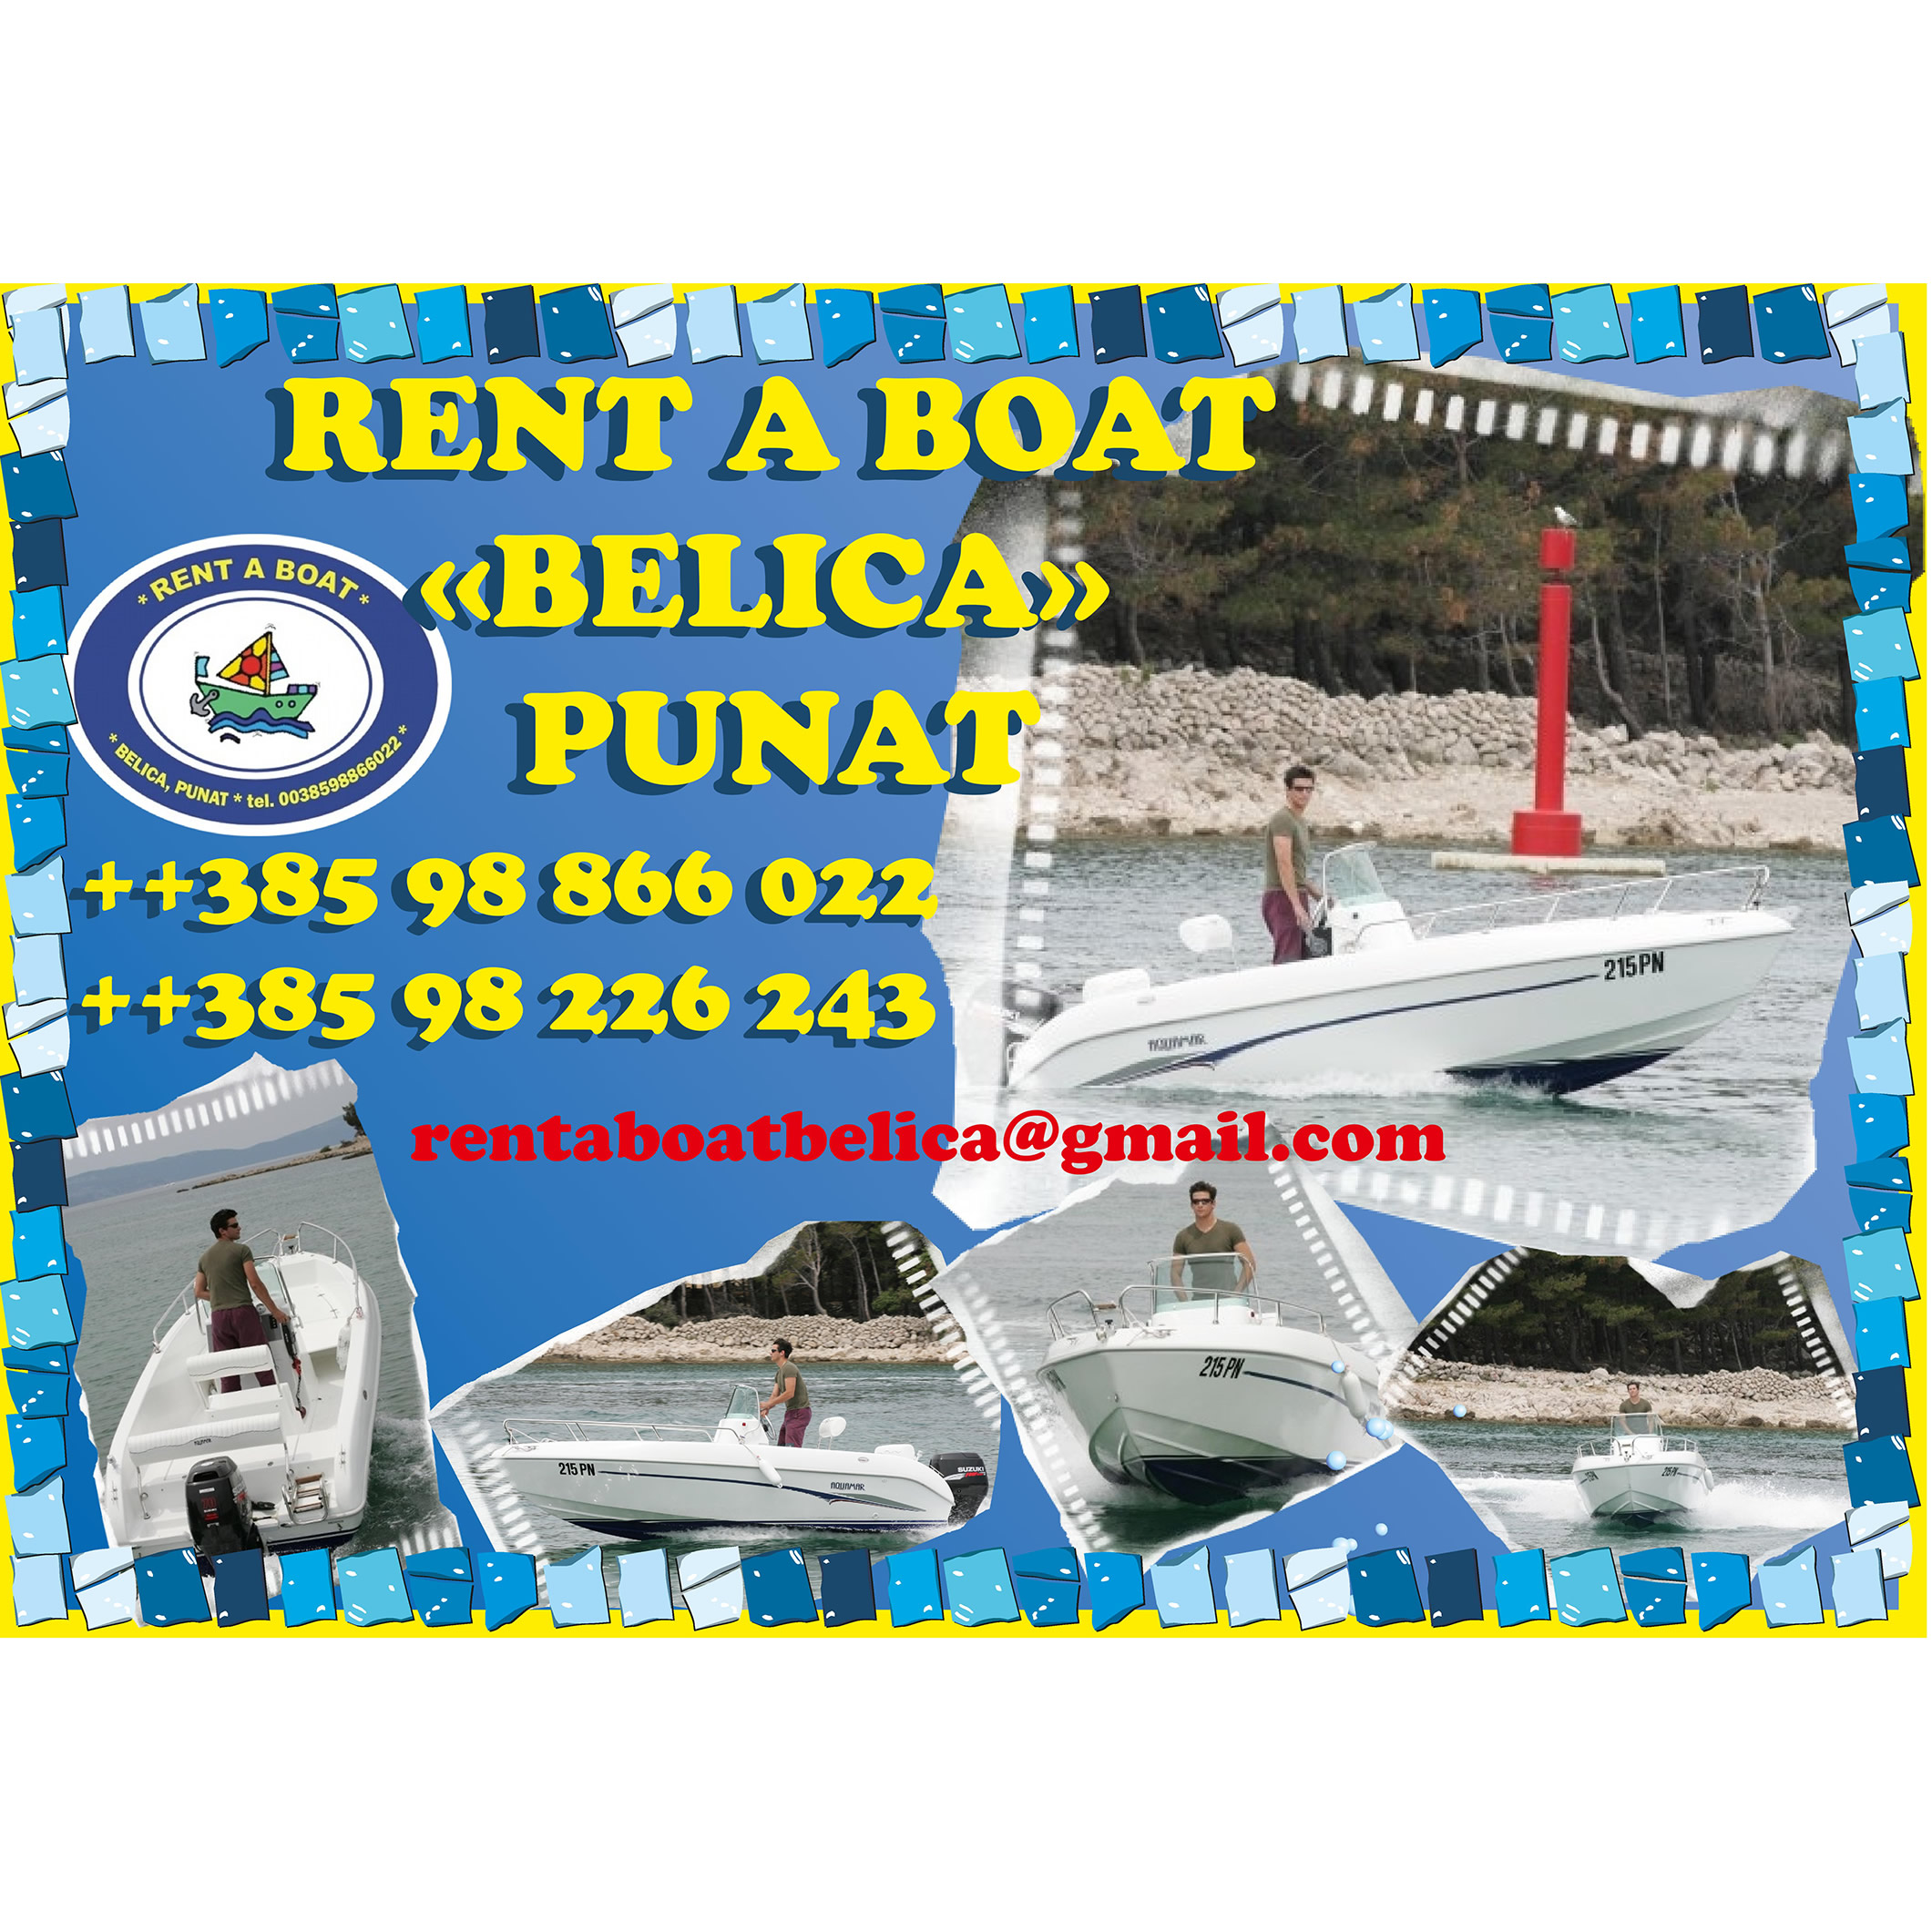 BELICA - rent a boat